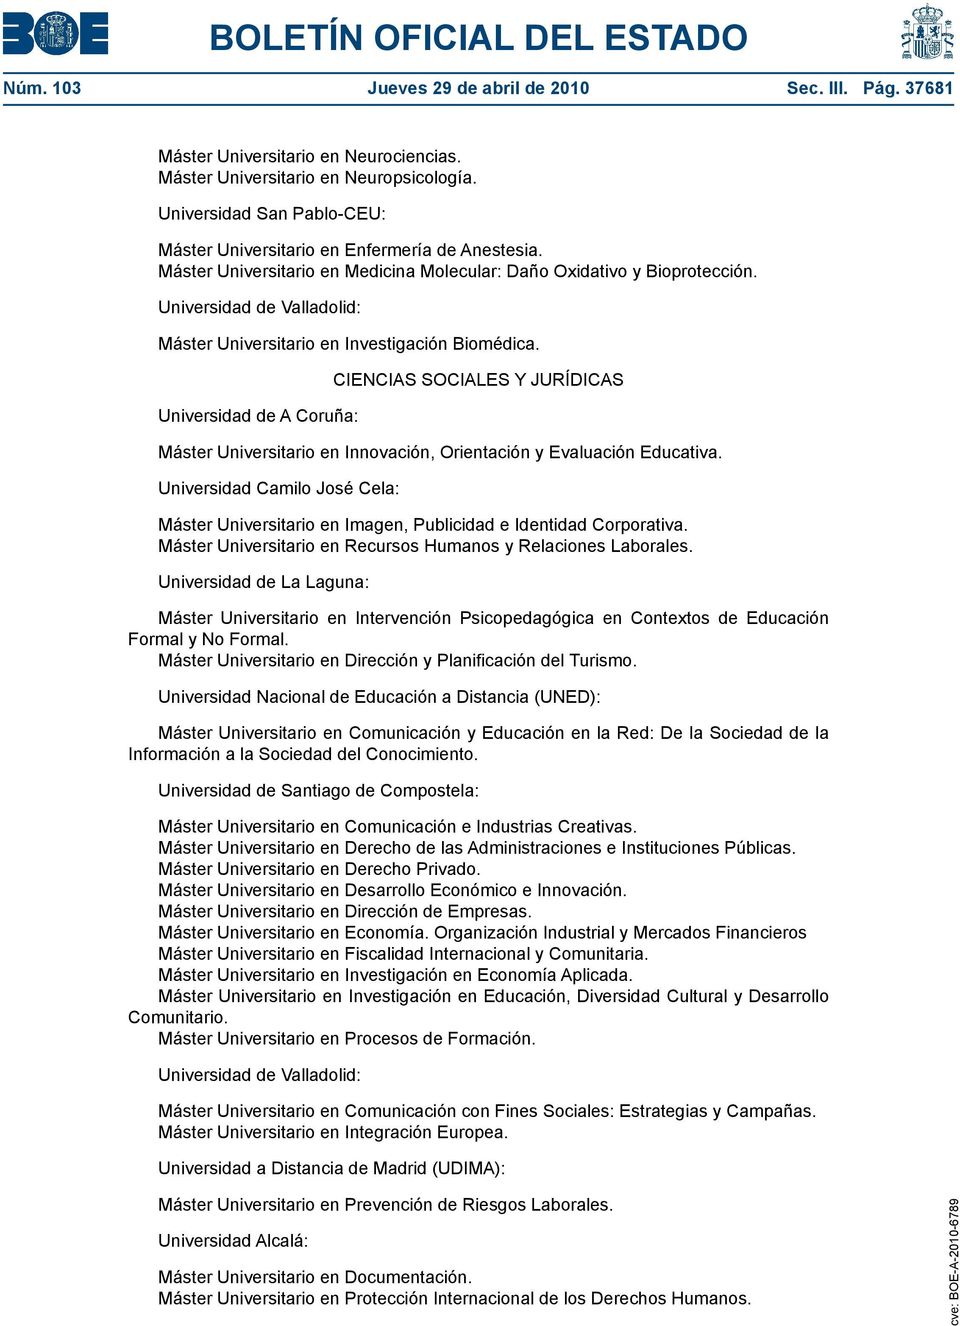 Universidad de A Coruña: CIENCIAS SOCIALES Y JURÍDICAS Máster Universitario en Innovación, Orientación y Evaluación Educativa.